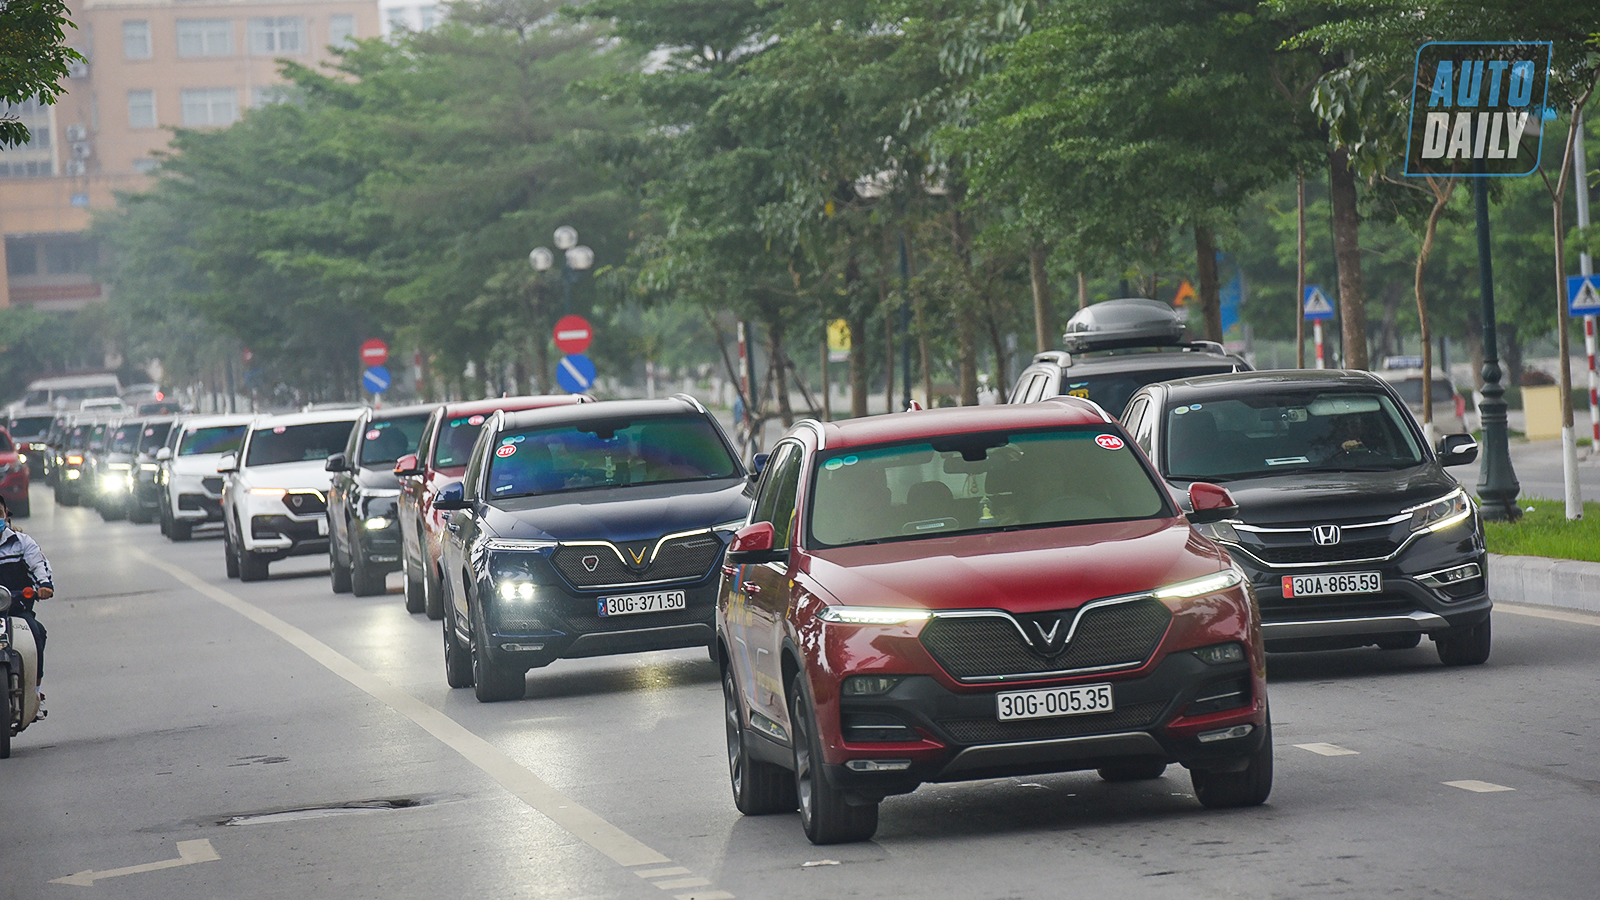 Chùm ảnh gần 60 xe VinFast Lux tại Hà Nội xuất phát Offline 3 miền tại Hội An dsc-6403-copy.jpg